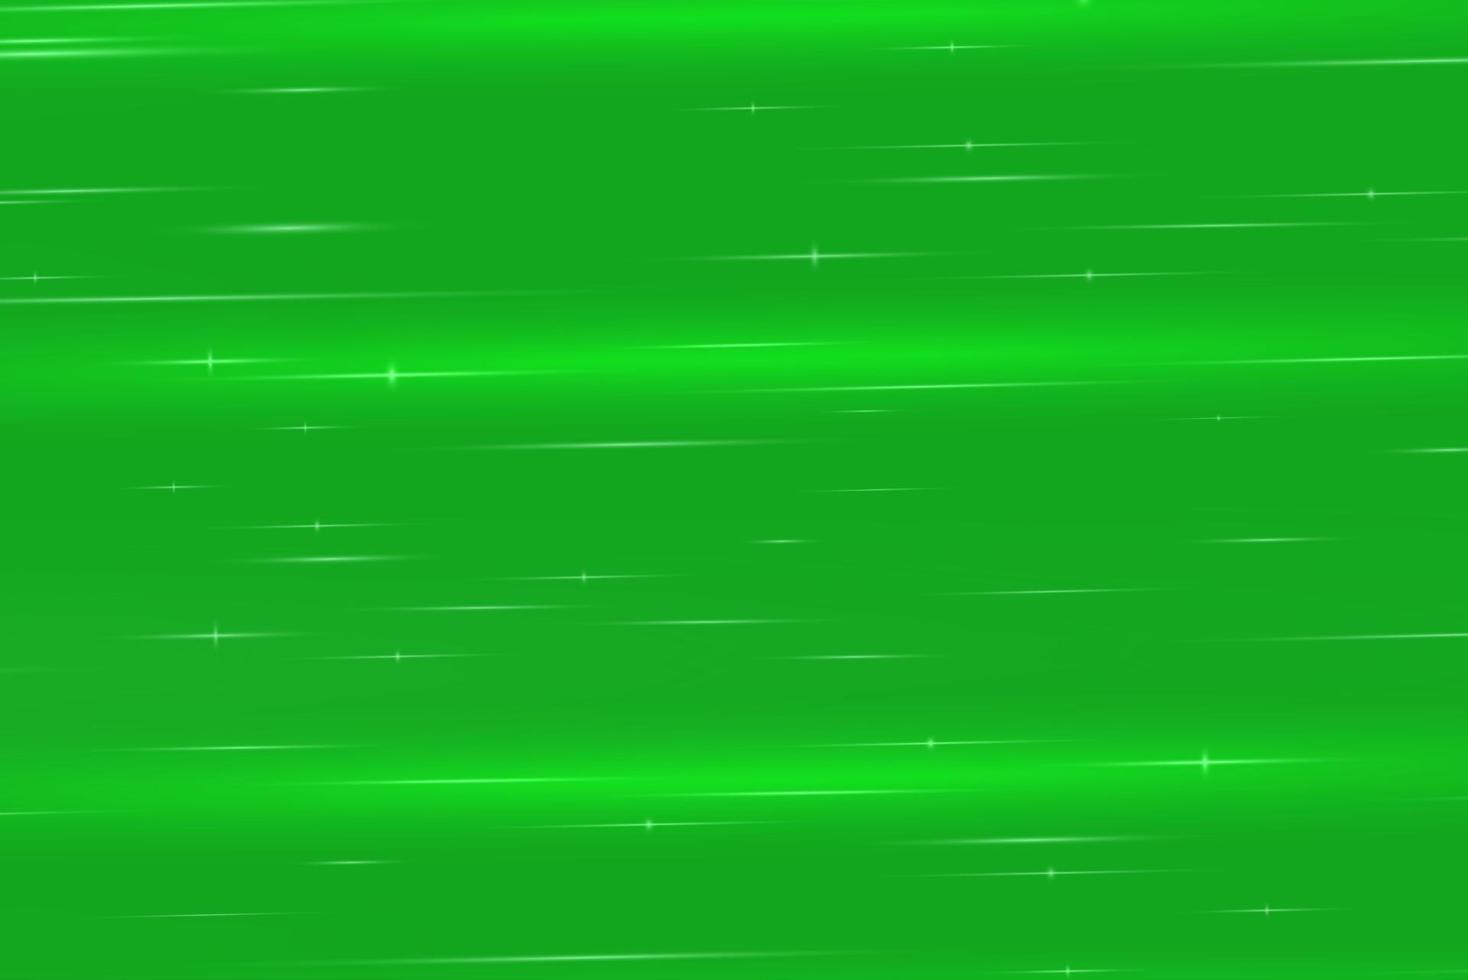 groene halftone abstracte achtergrond met gradiënt halftoonstijl vector